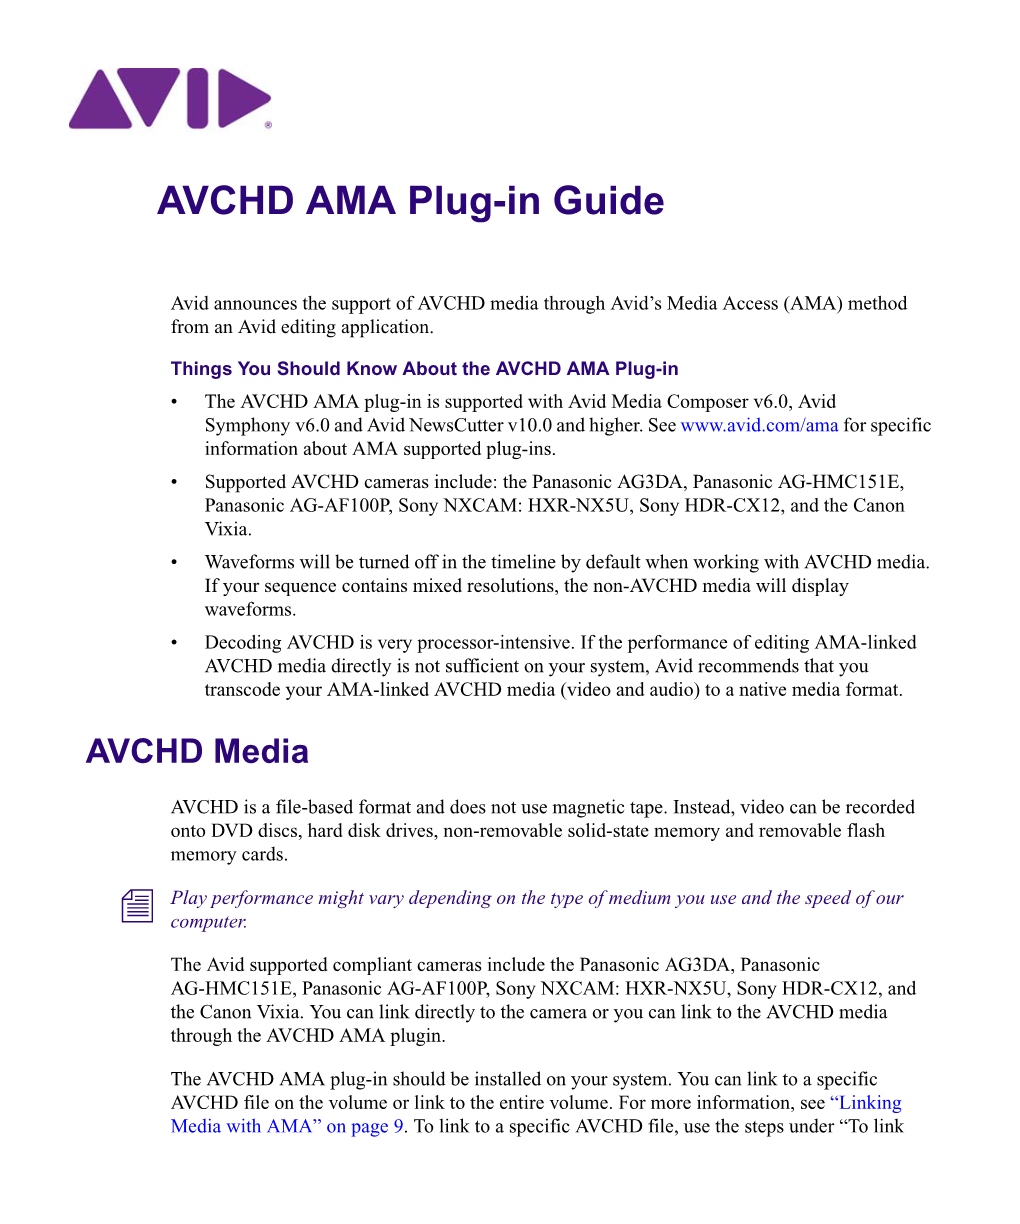 AVCHD AMA Plug-In Guide